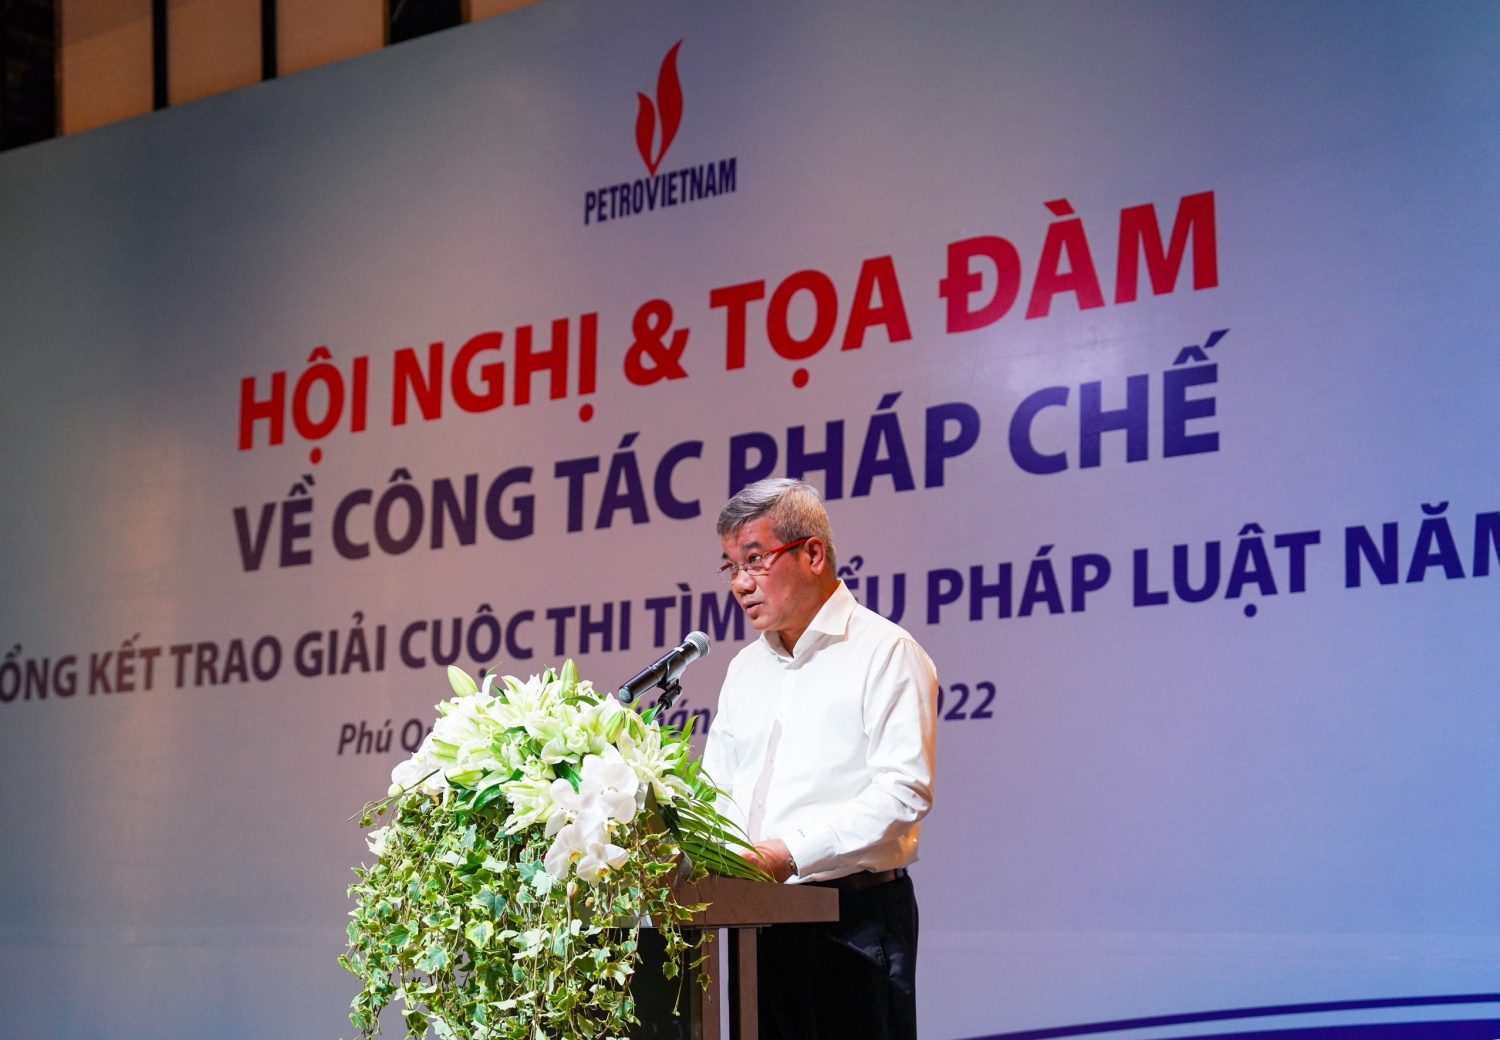 Đồng chí Đỗ Chí Thanh, Phó Tổng giám đốc Tập đoàn phát biểu khai mạc Hội nghị